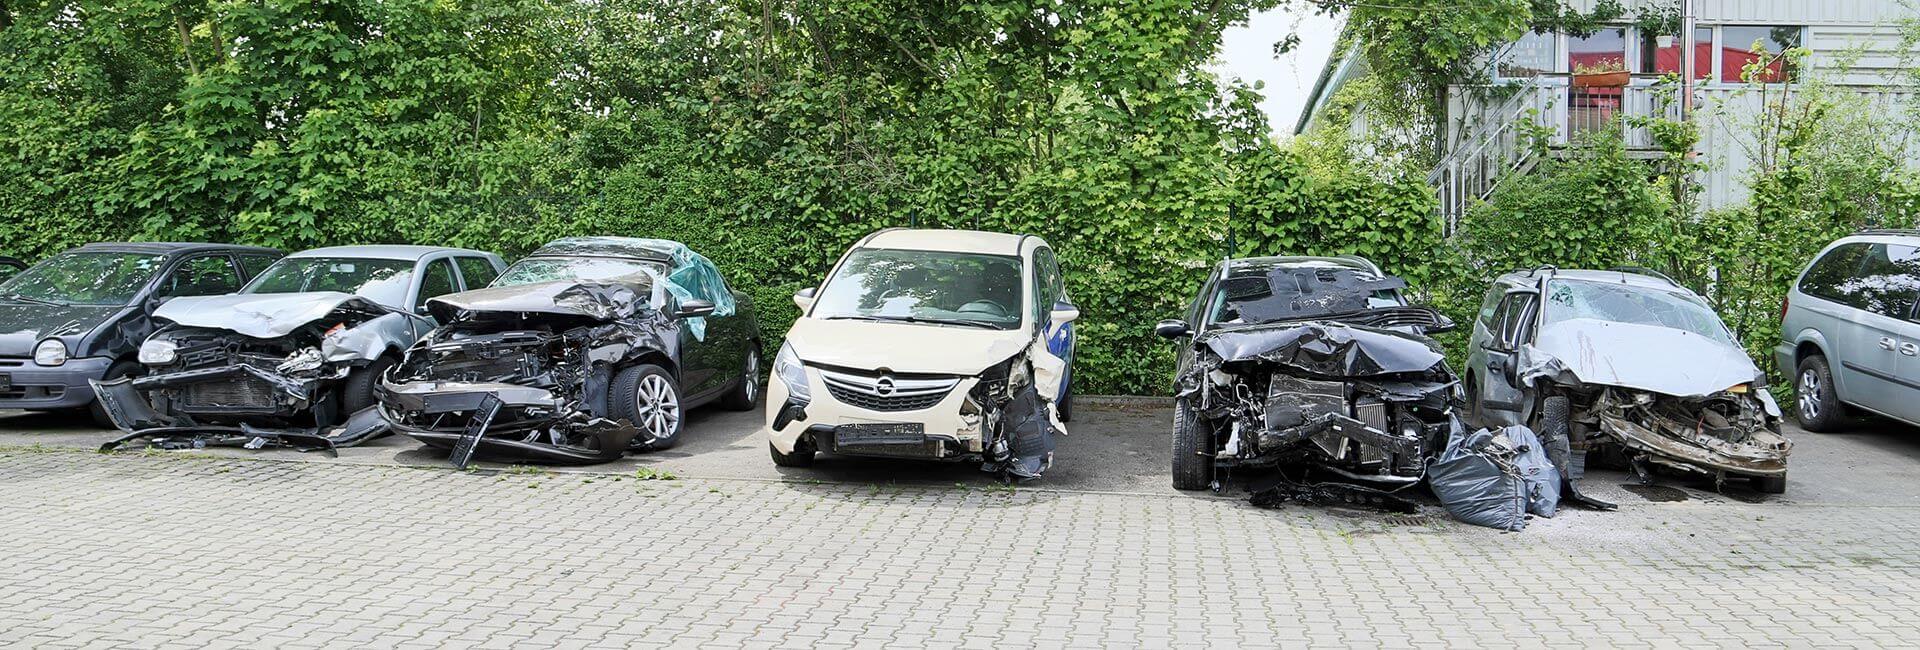 Unfallinstandsetzung bei Auto Artmeier in Steinach